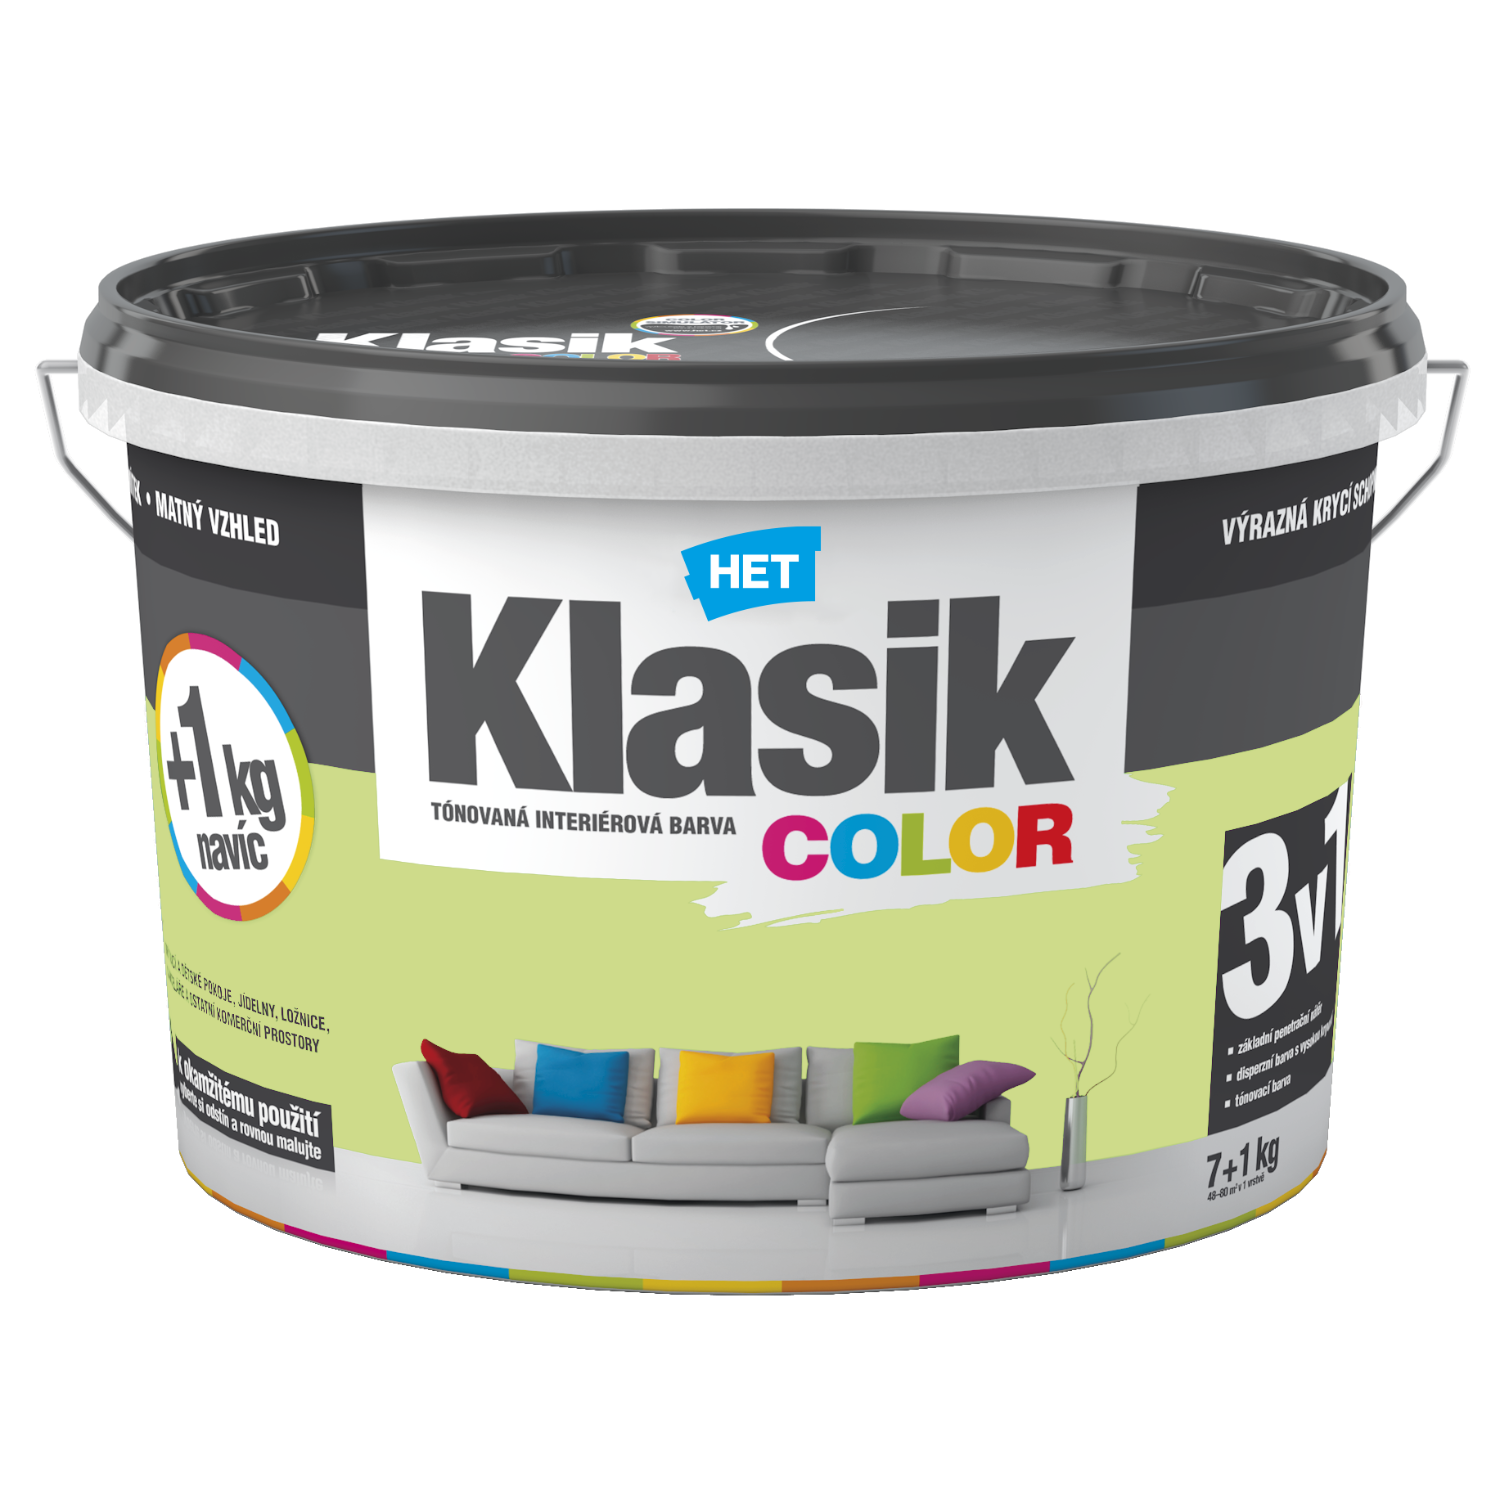 HET Klasik COLOR tónovaná interiérová akrylátová disperzná oteruvzdorná farba 7 kg + 1 kg zdarma, KC0487 - modrý tyrkysový